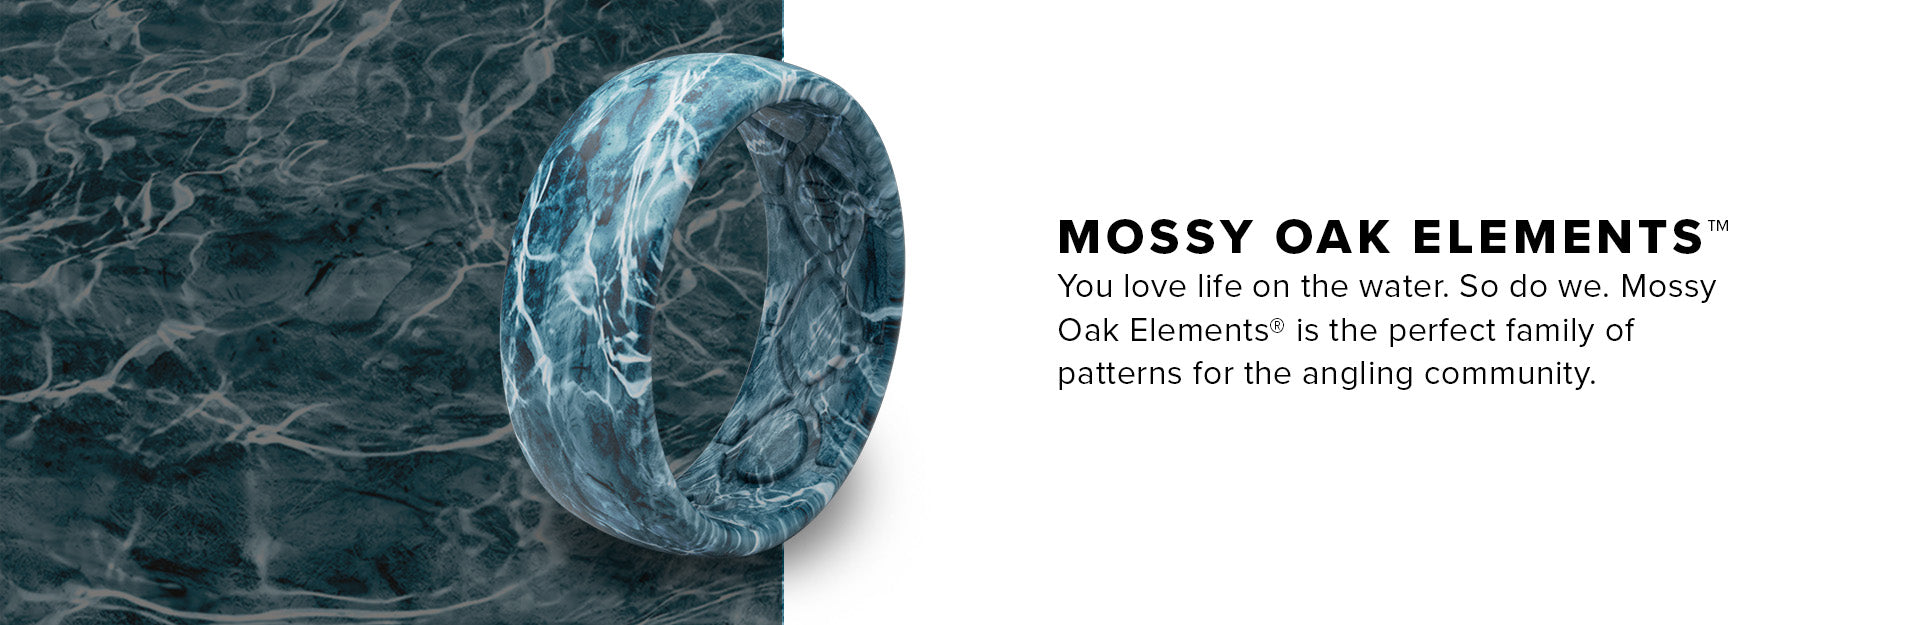 Mossy Oak Elements